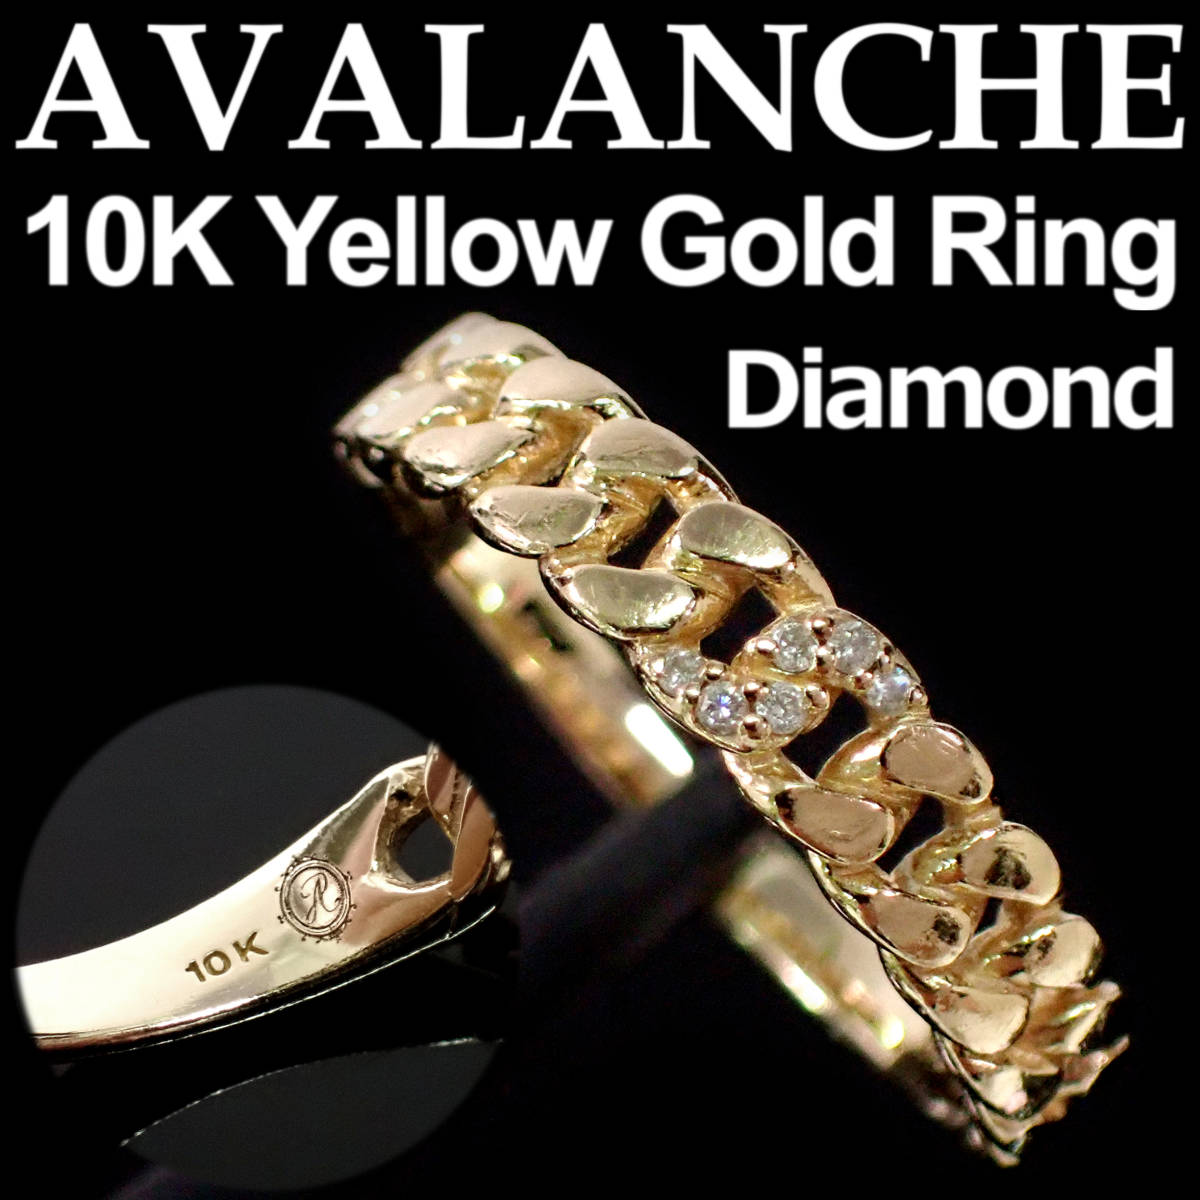 AVALANCHE Diamond 10K Yellow Gold Ring 13号 アヴァランチ ダイヤモンド イエローゴールド リング 1-9778-01